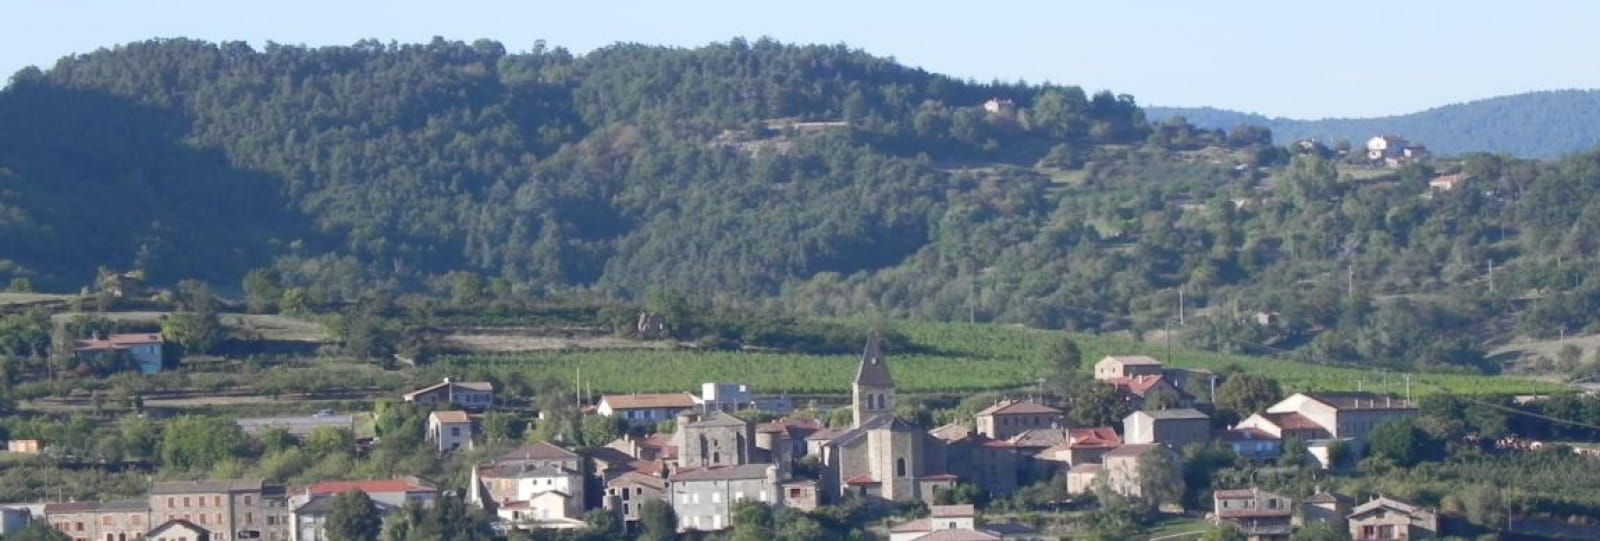 Village d'Arlebosc